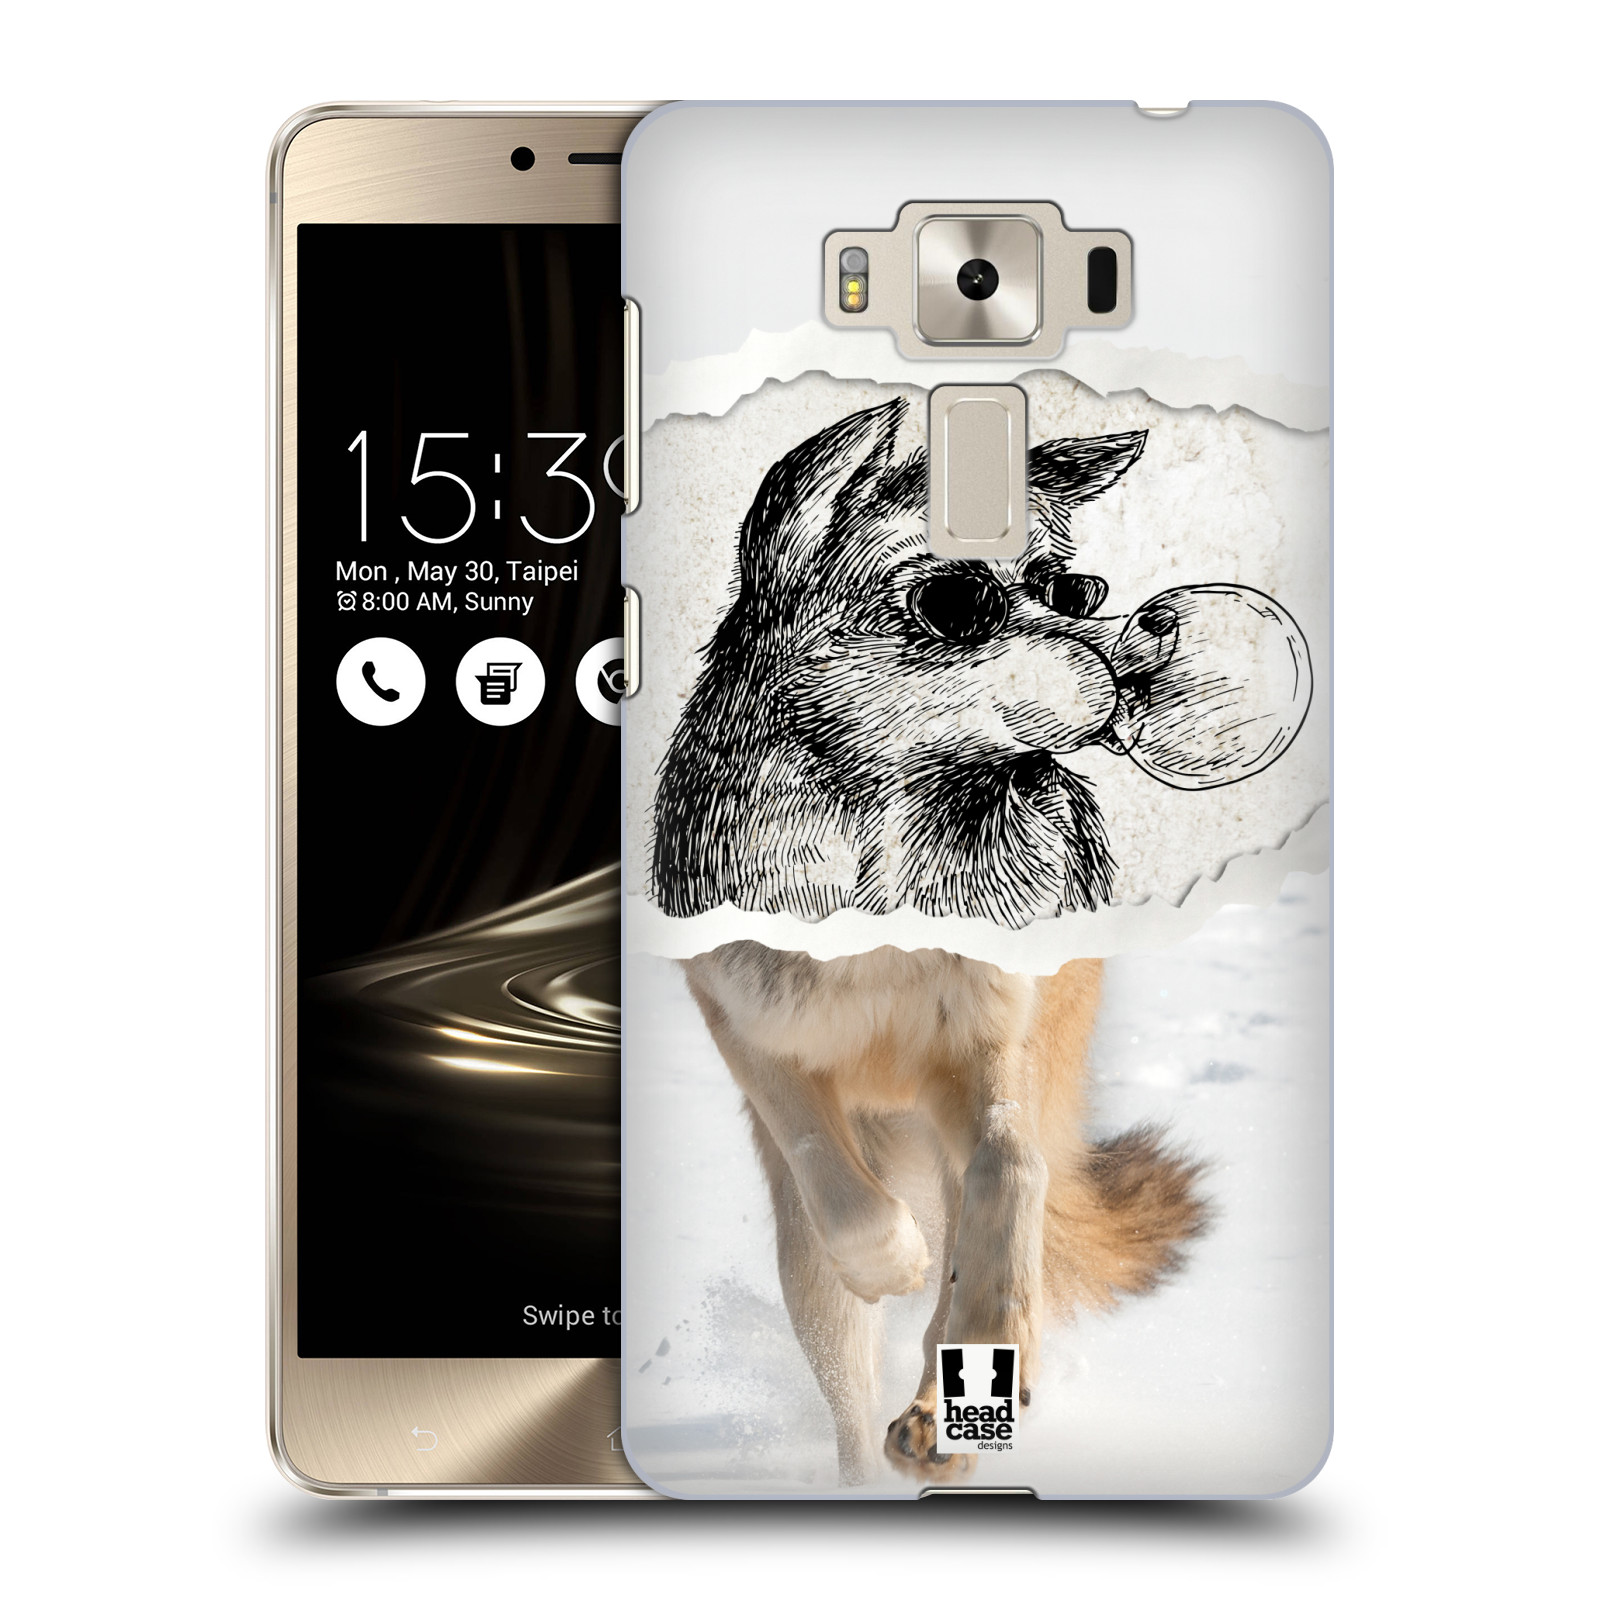 HEAD CASE plastový obal na mobil Asus Zenfone 3 DELUXE ZS550KL vzor zvířata koláž vlk pohodář